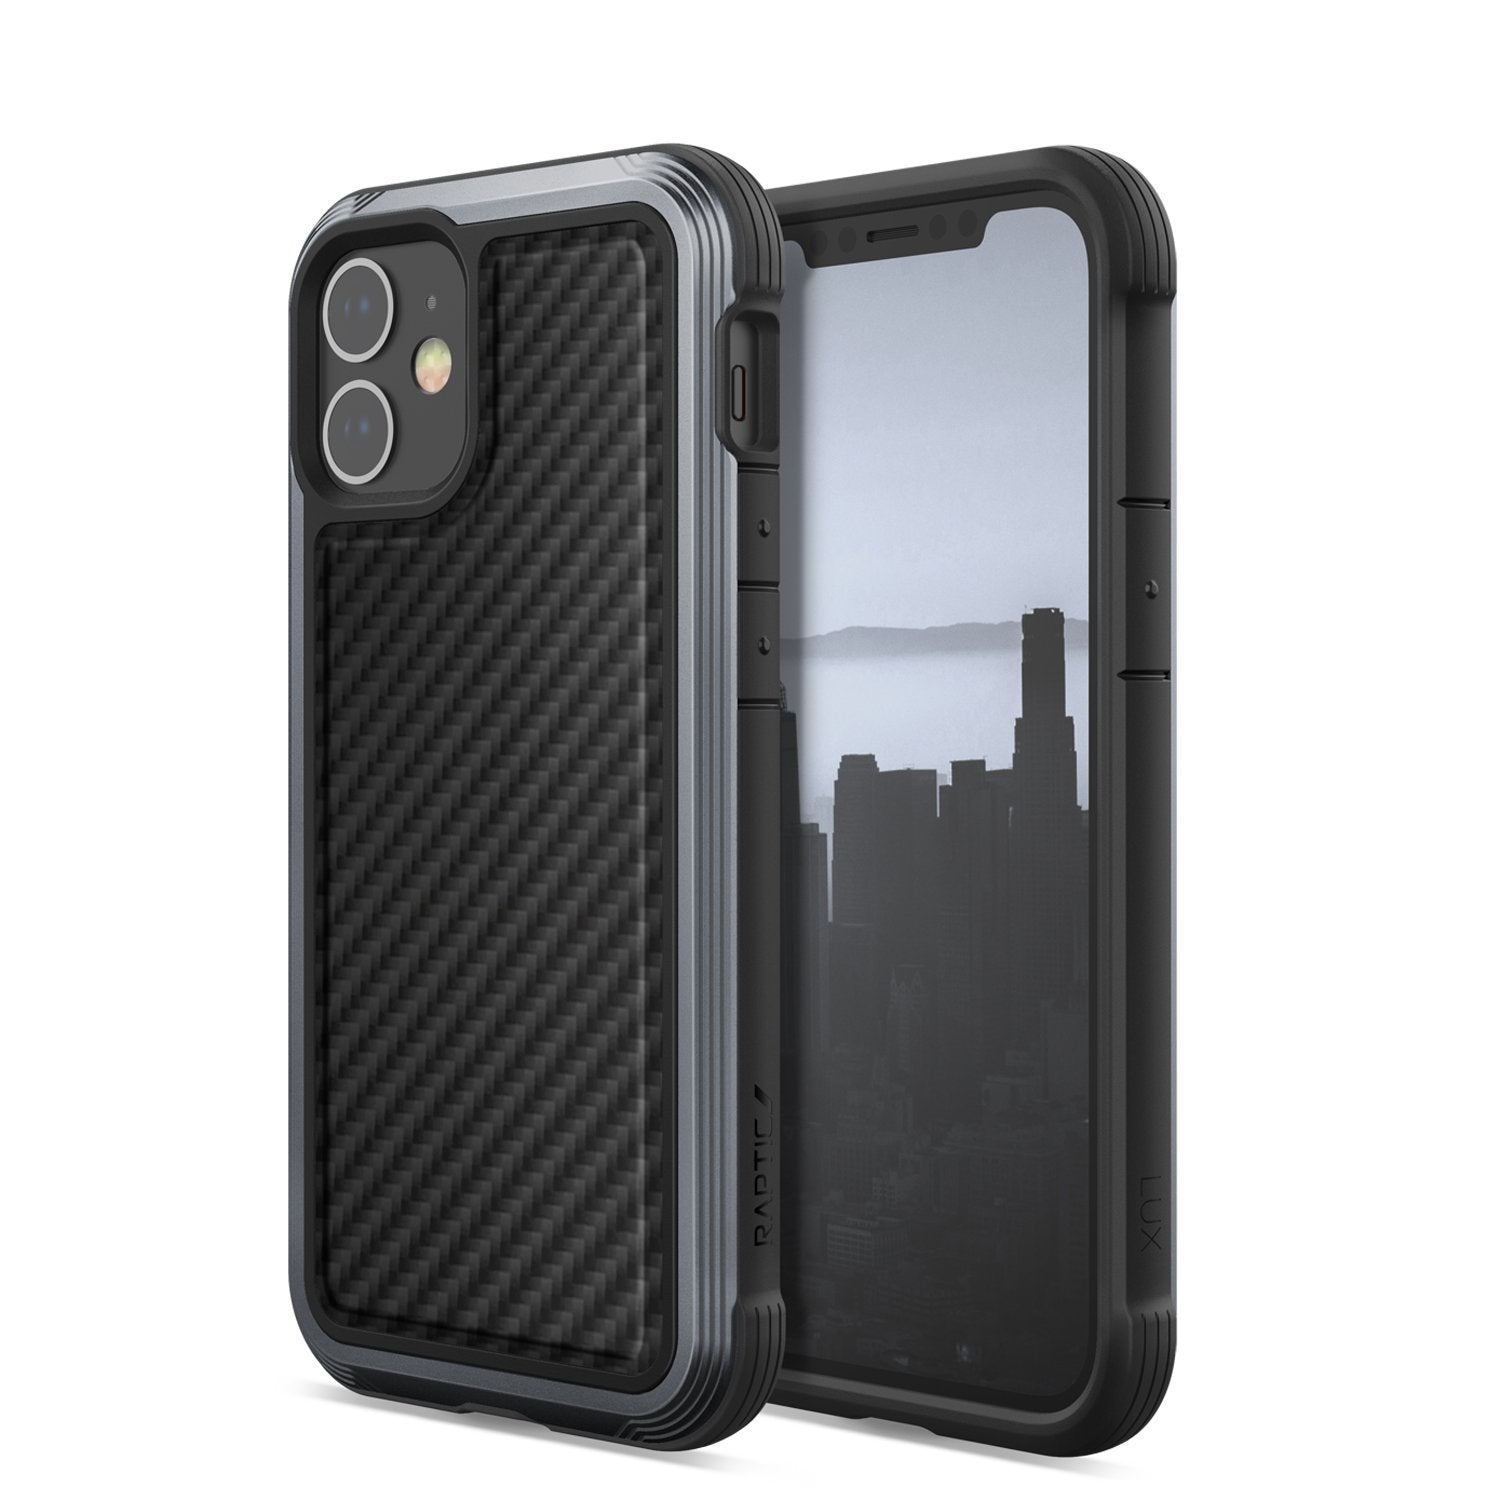 X-Doria Defense Raptic Lux Case for iPhone 12 mini 5.4"(2020), Black Carbon Fiber iPhone 12 X-Doria 